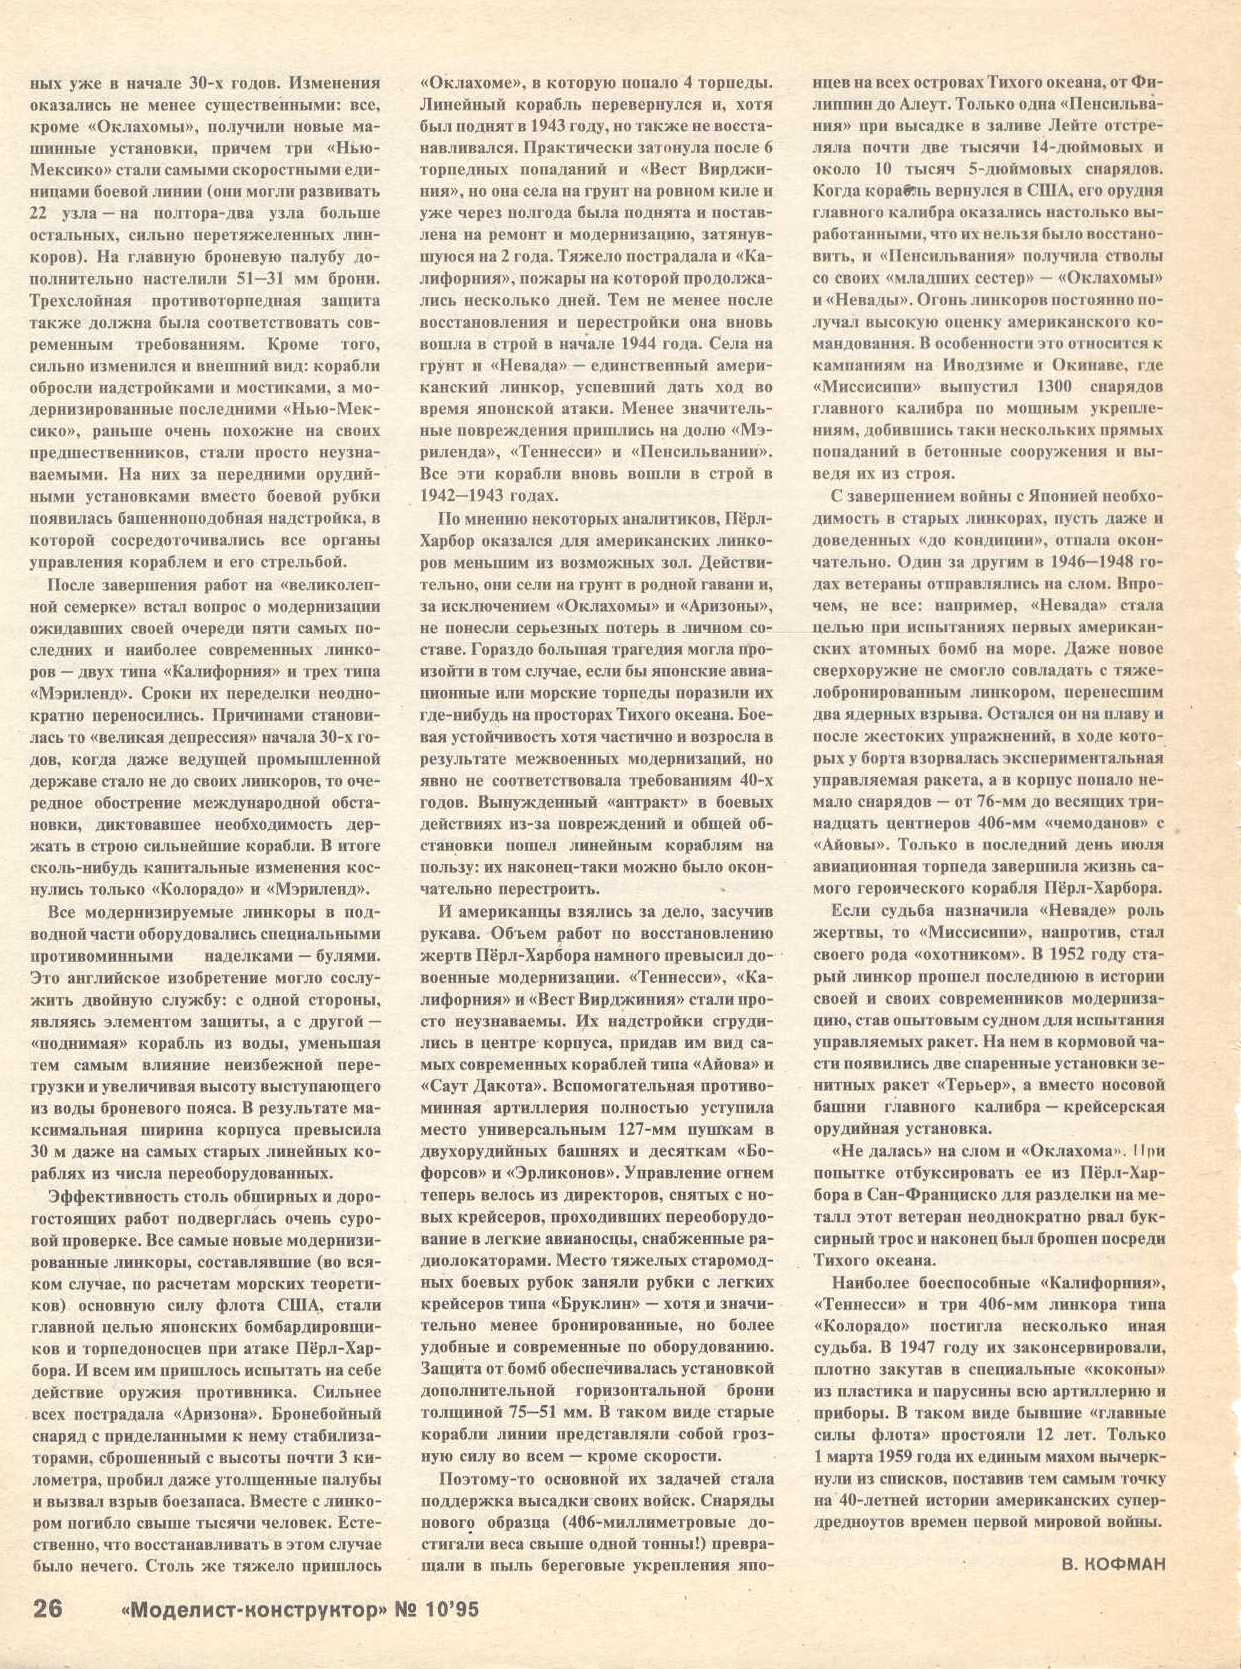 МК 10, 1995, 26 c.